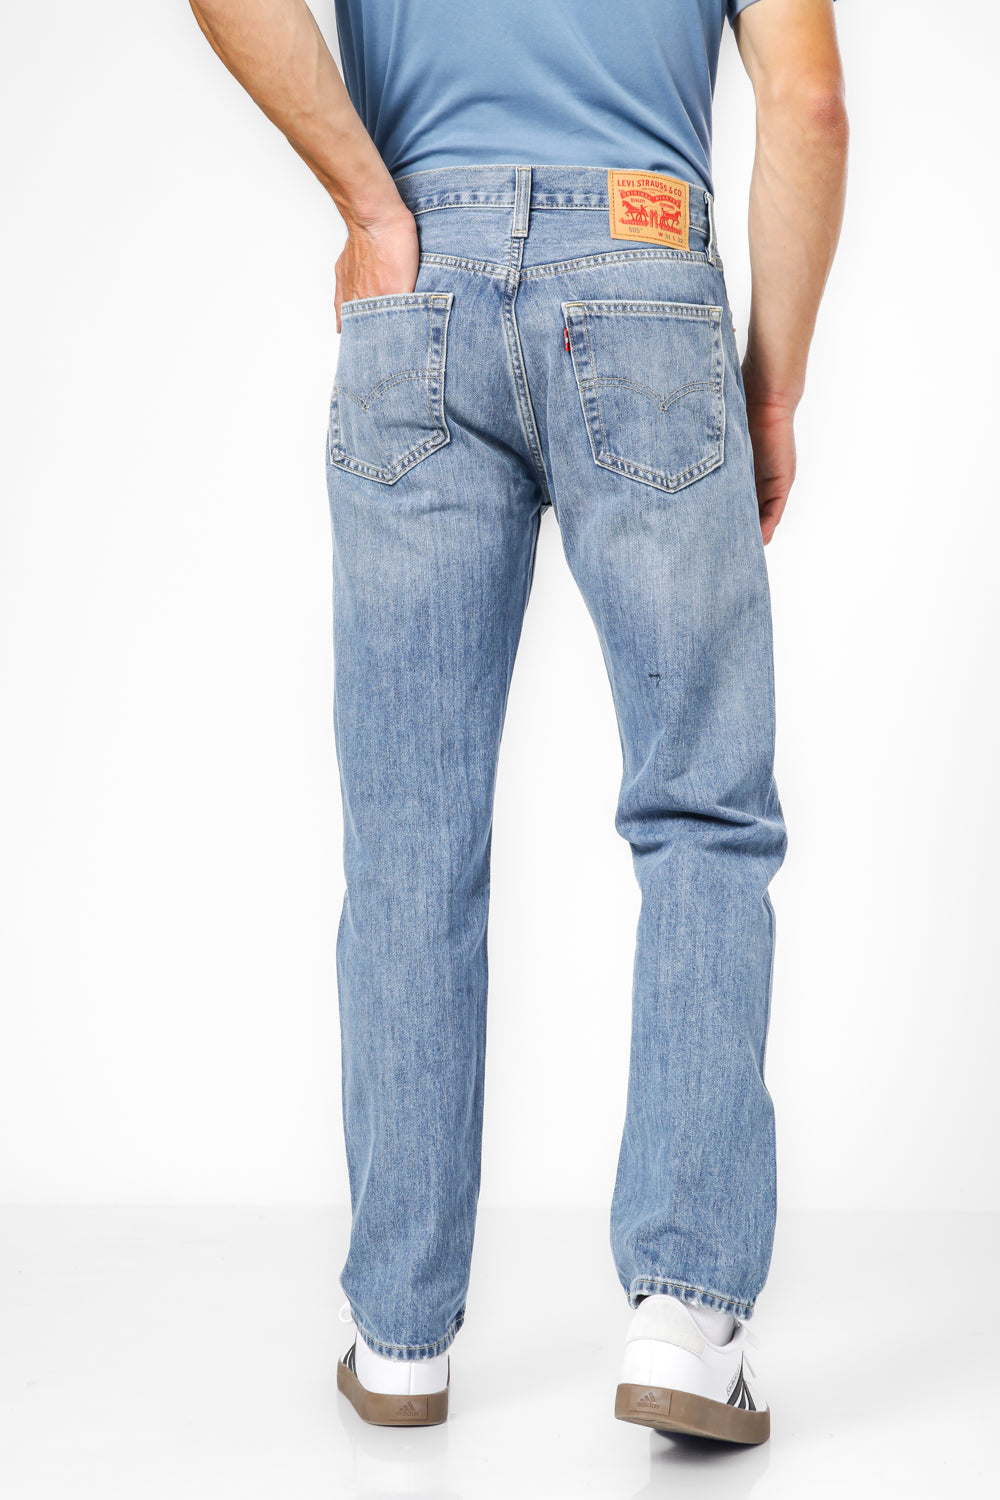 ג'ינס 505 Regular בצבע כחול בהיר